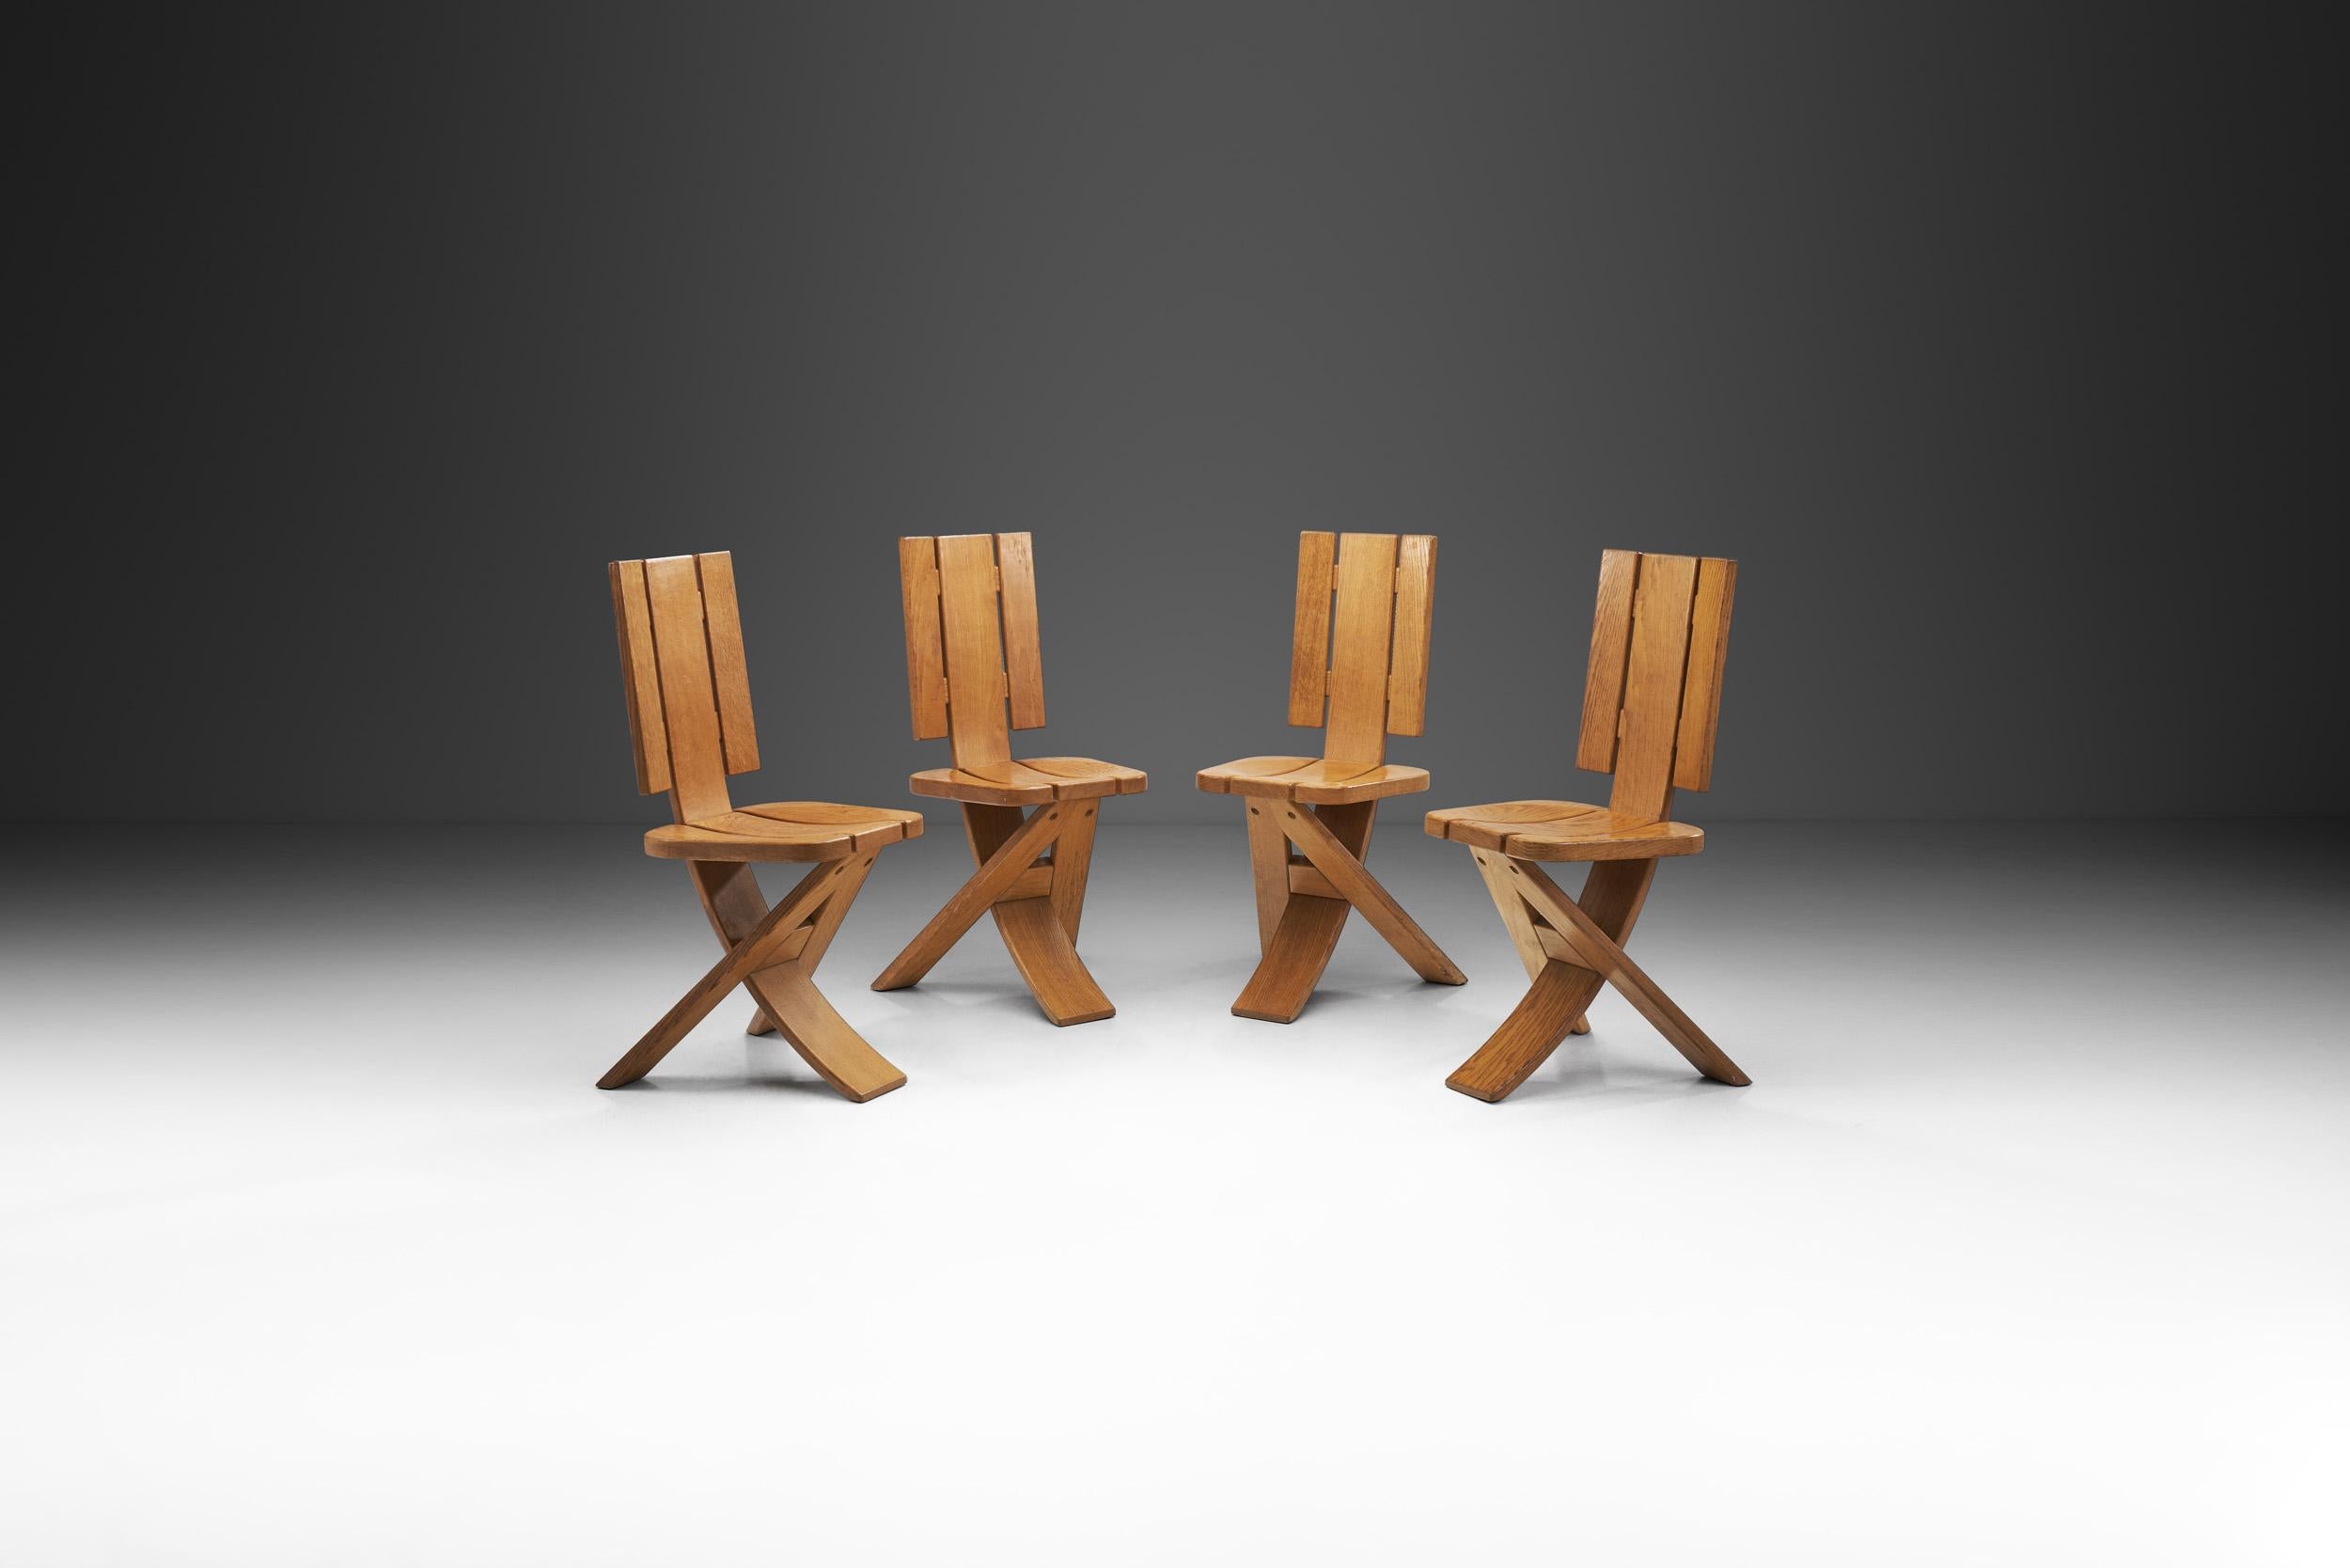 Cet ensemble de quatre chaises françaises s'inscrit dans le style Arts & Crafts, préservant et mettant en valeur les qualités naturelles du matériau utilisé pour sa fabrication. Les courbes sont légères et peu fréquentes, l'accent étant mis sur la